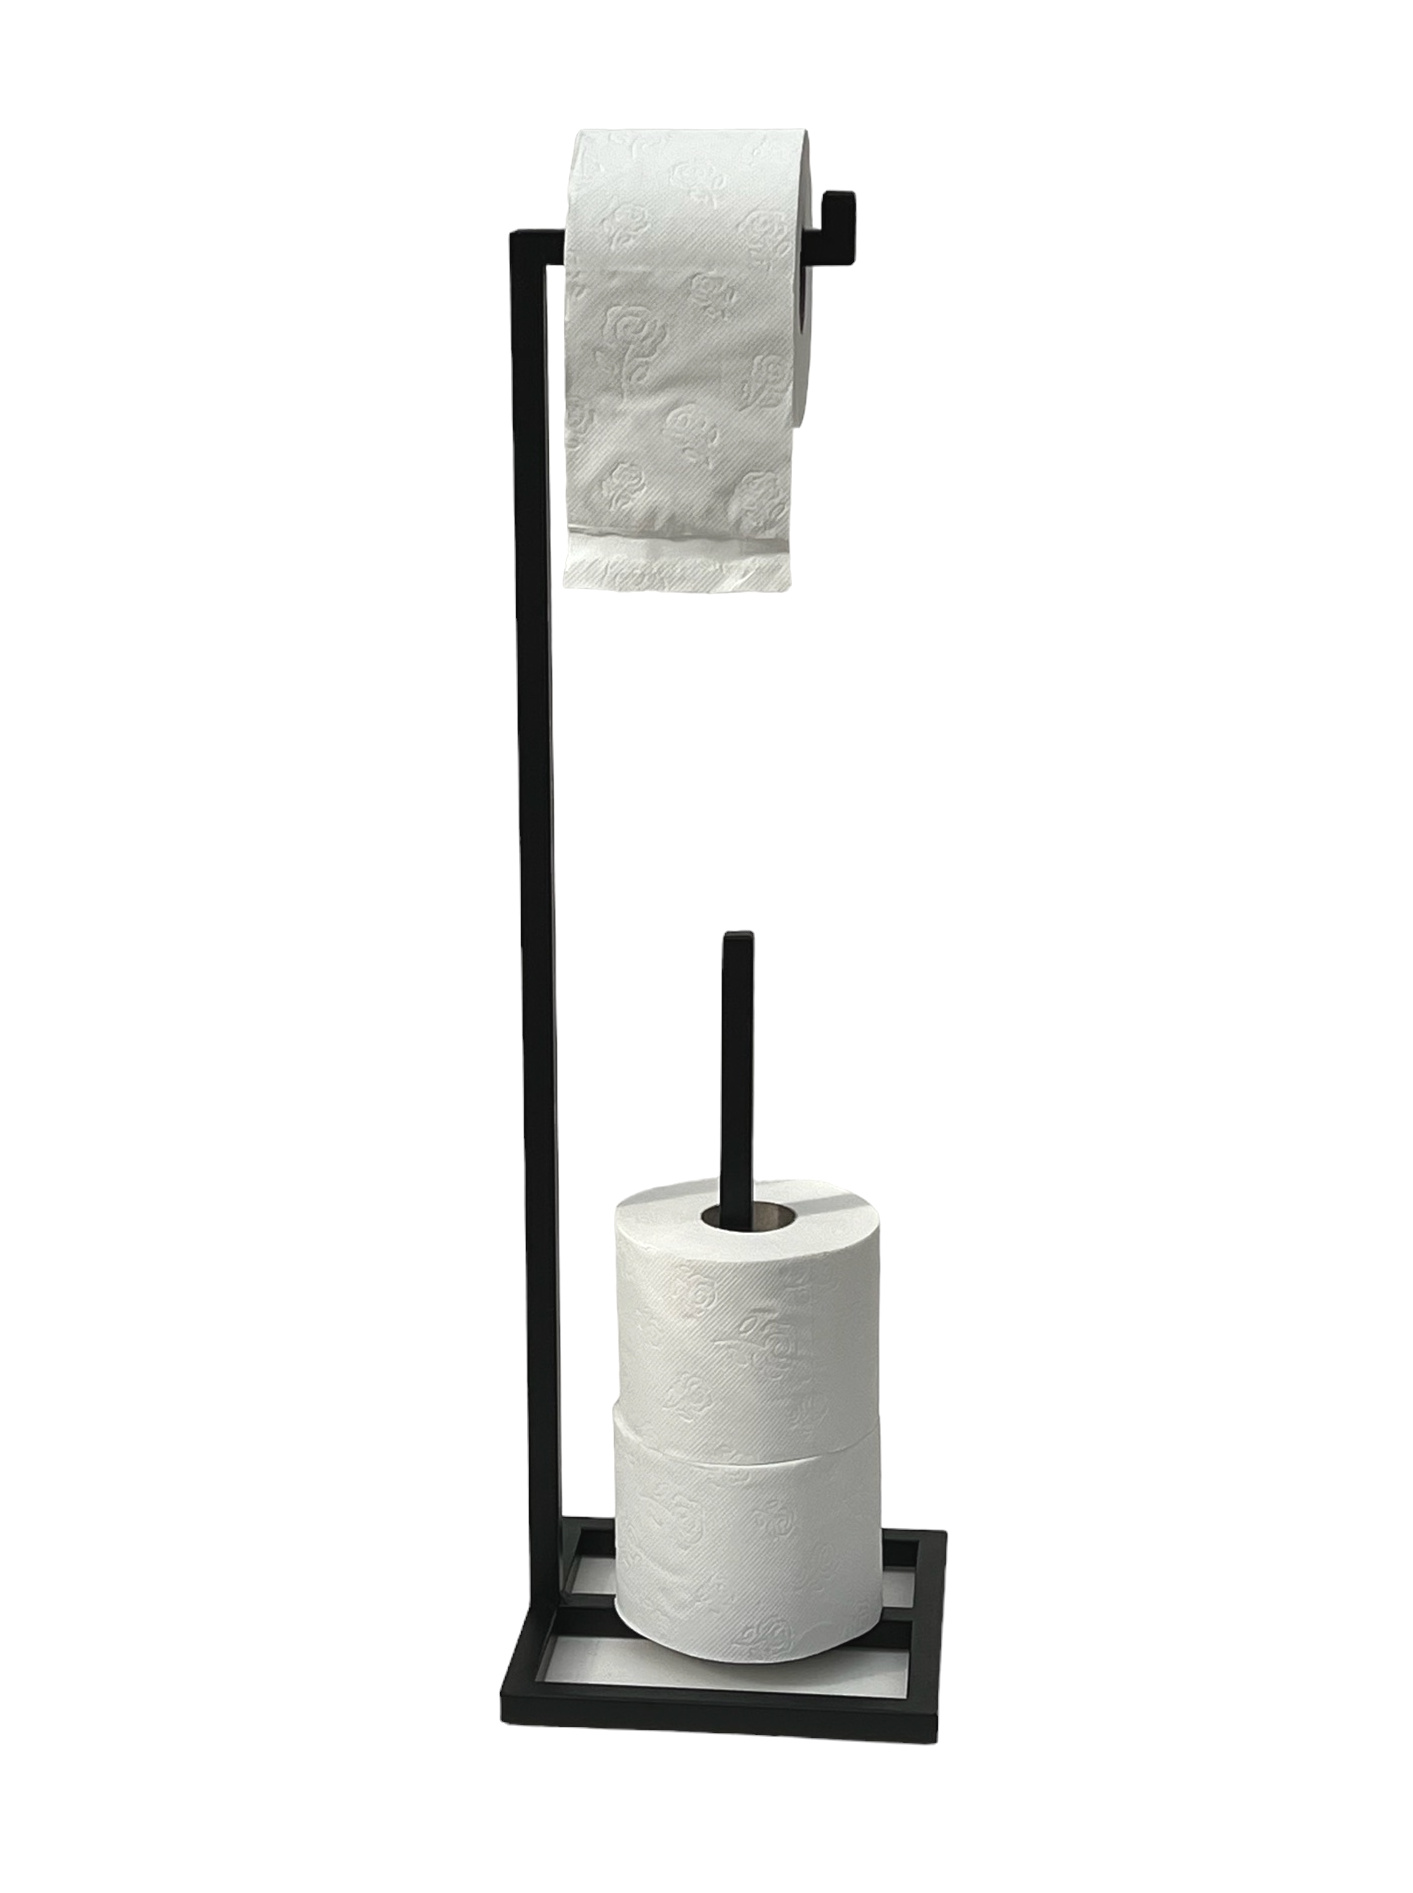 Toilettenpapierhalter Stehend DanDiBo 96459 WC Gäste Rollenhalter-DanDiBo Ständer Metall Ersatzrollenhalter Klopapierhalter Papierhalter Schwarz